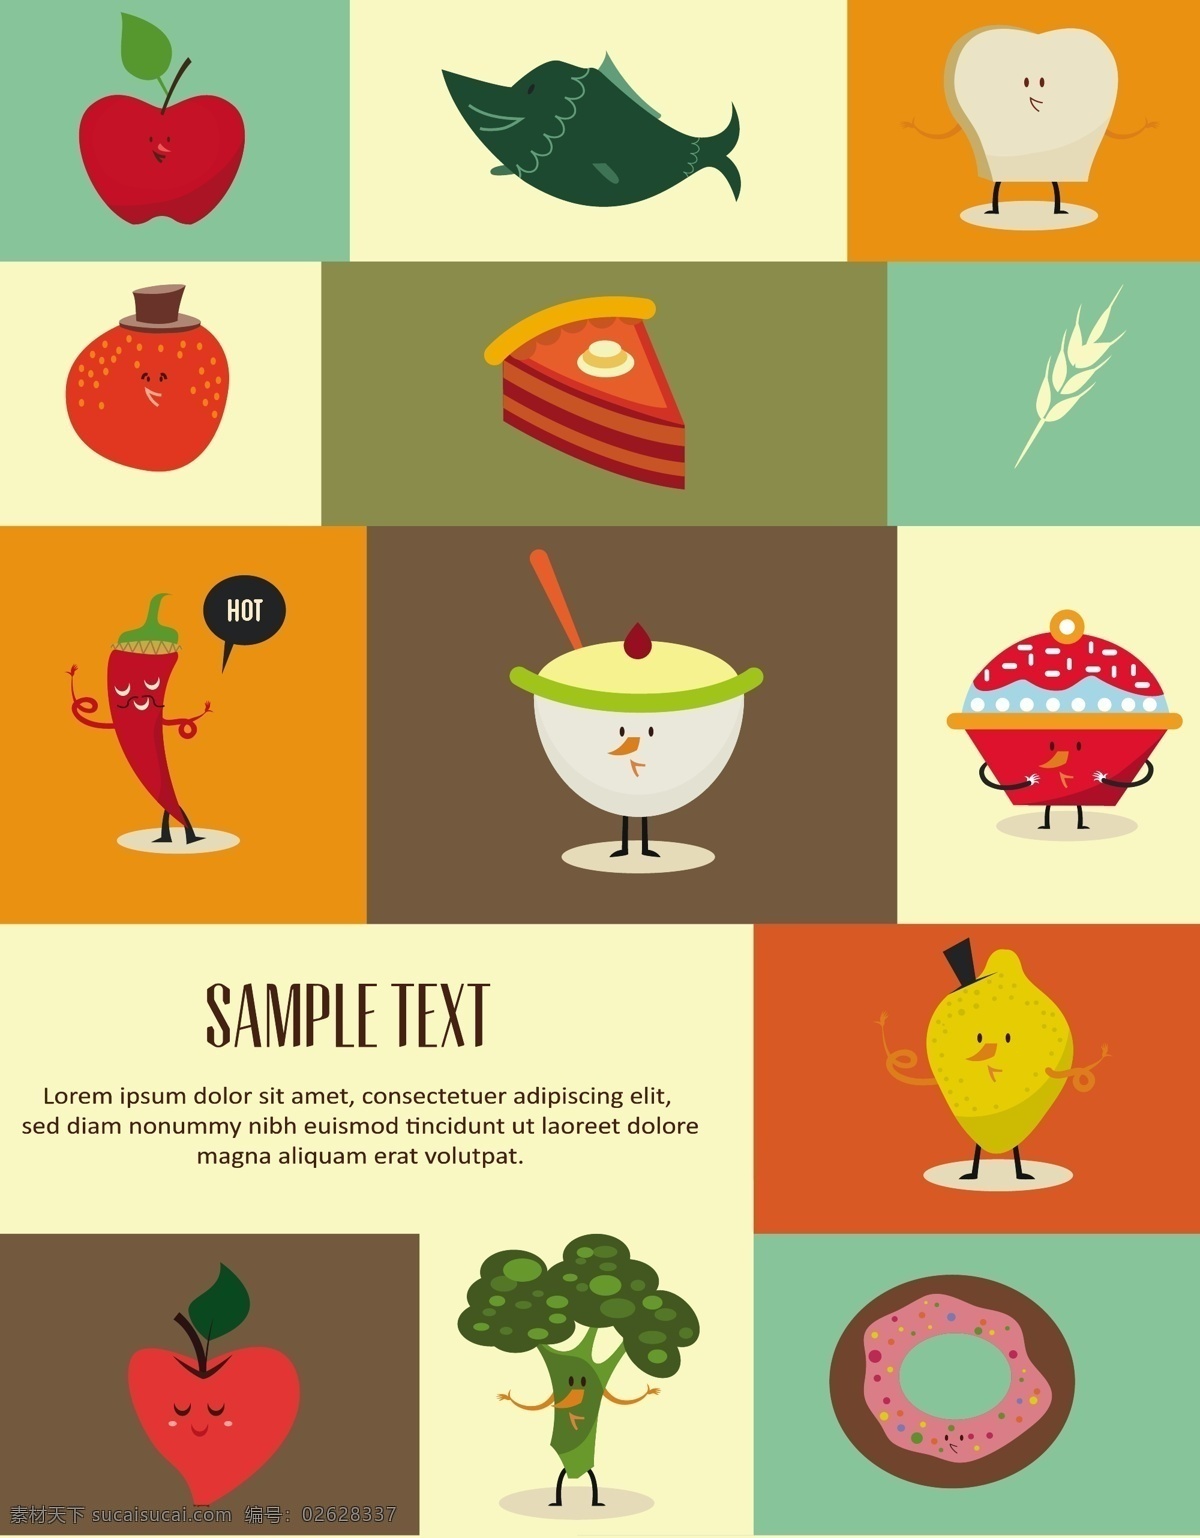 卡通水果蔬菜 卡通水果 矢量蔬菜 苹果 草莓 蛋糕 冰淇淋 柠檬 食品插画 美食漫画 美食海报 食品海报 其他模板 矢量素材 黄色